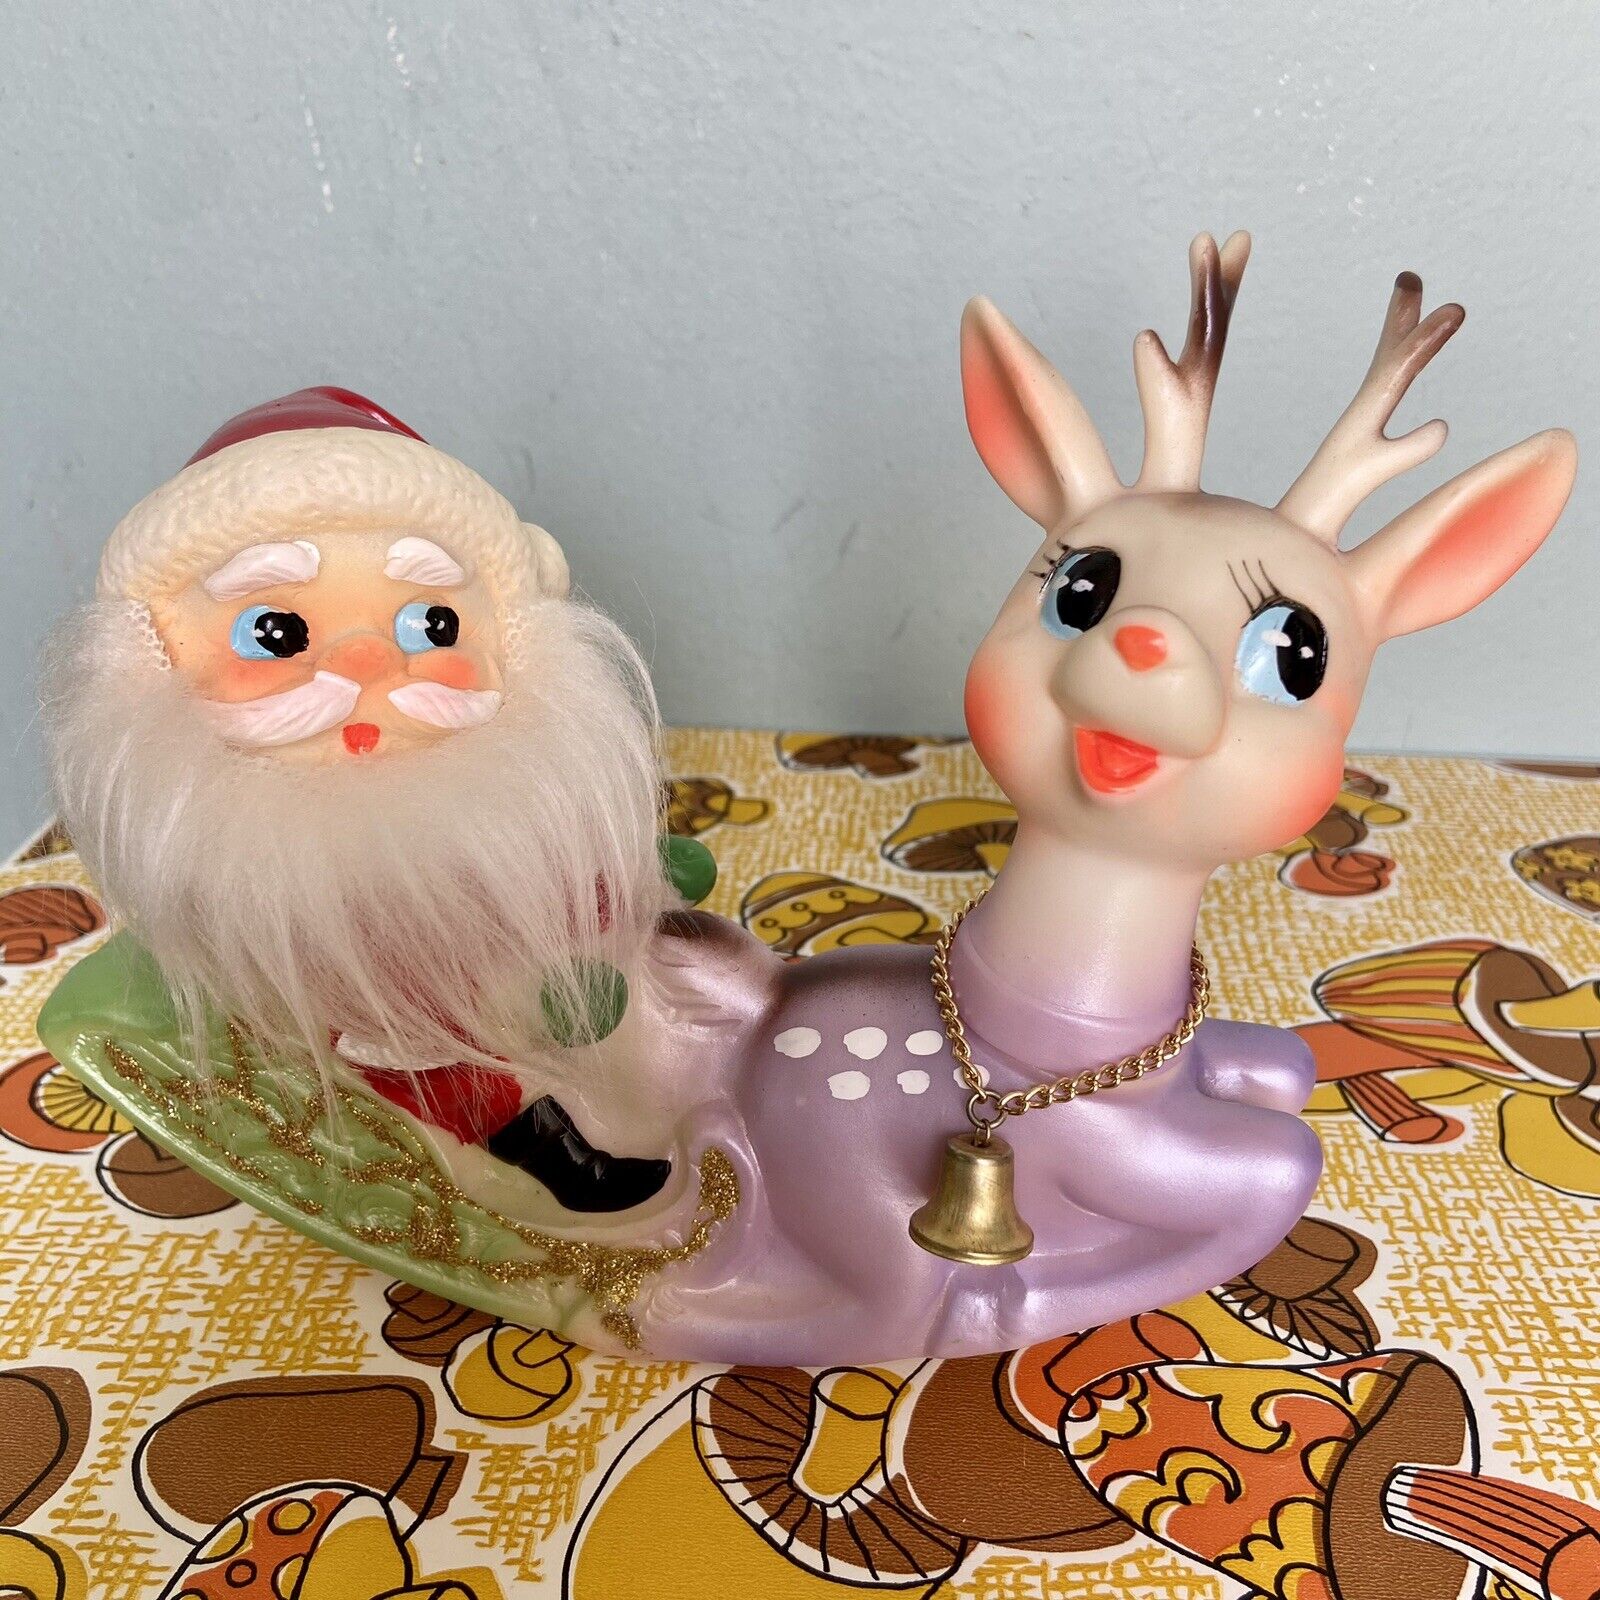 Vtg Ninohira Japan 7” Santa On Green Sleigh With Purple Reindeer Christmas Decor